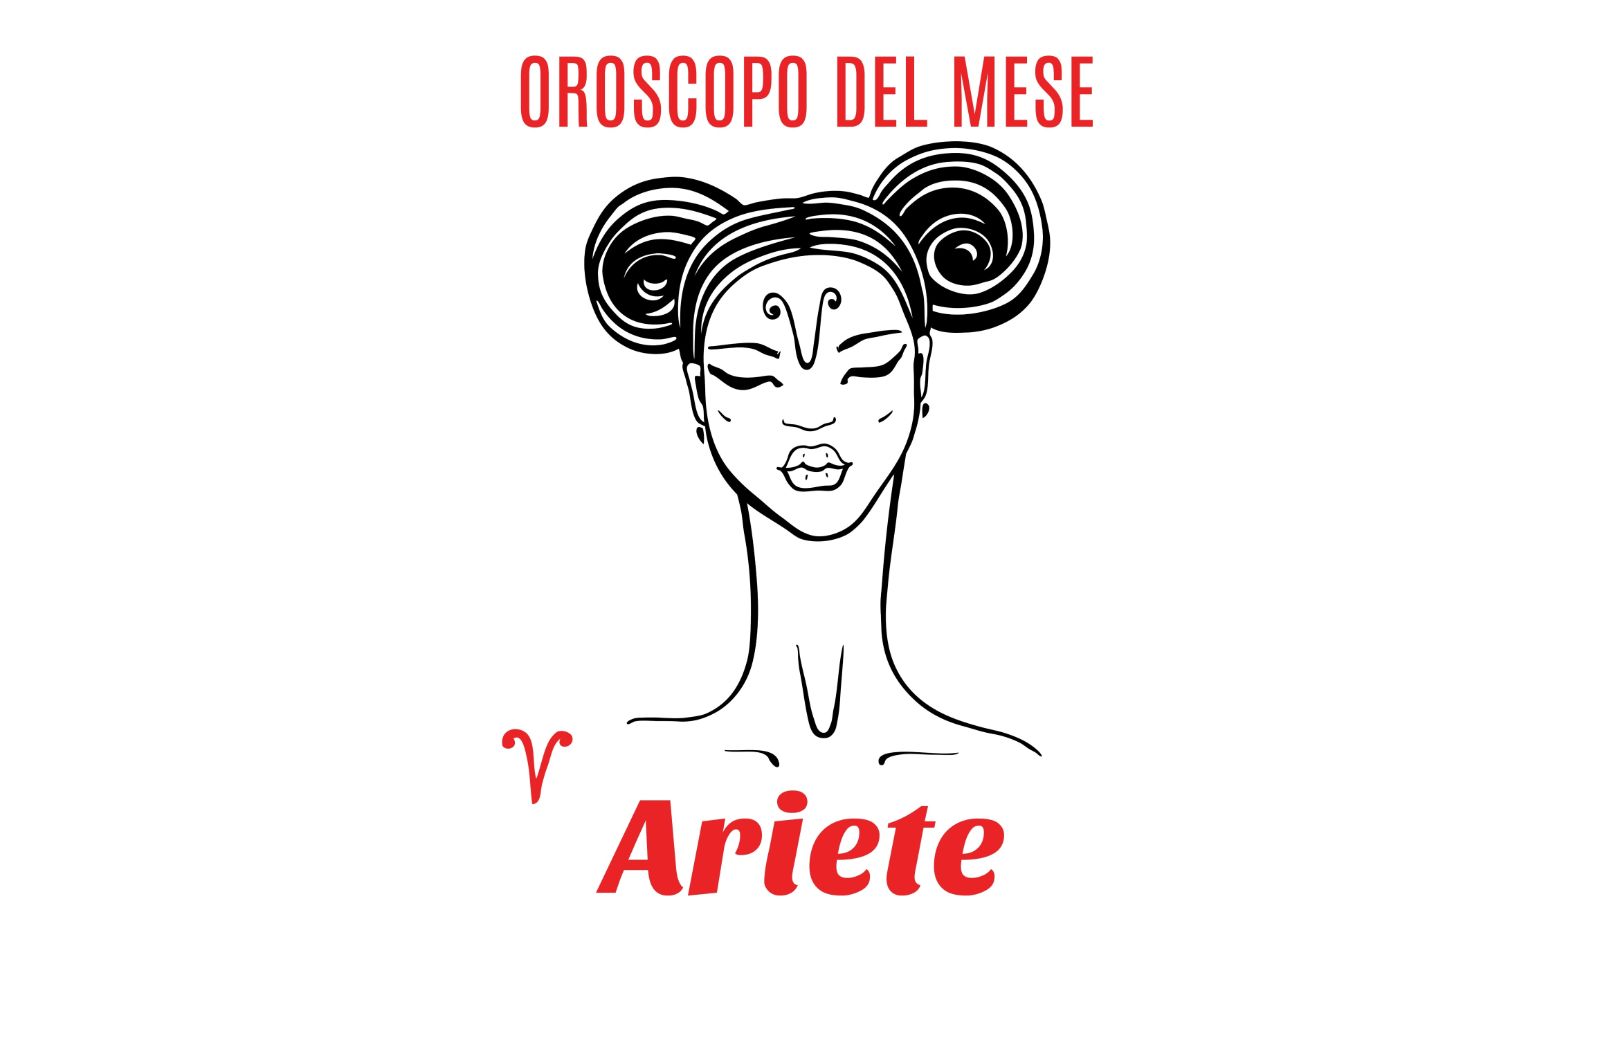 Oroscopo del mese: Ariete - settembre 2018